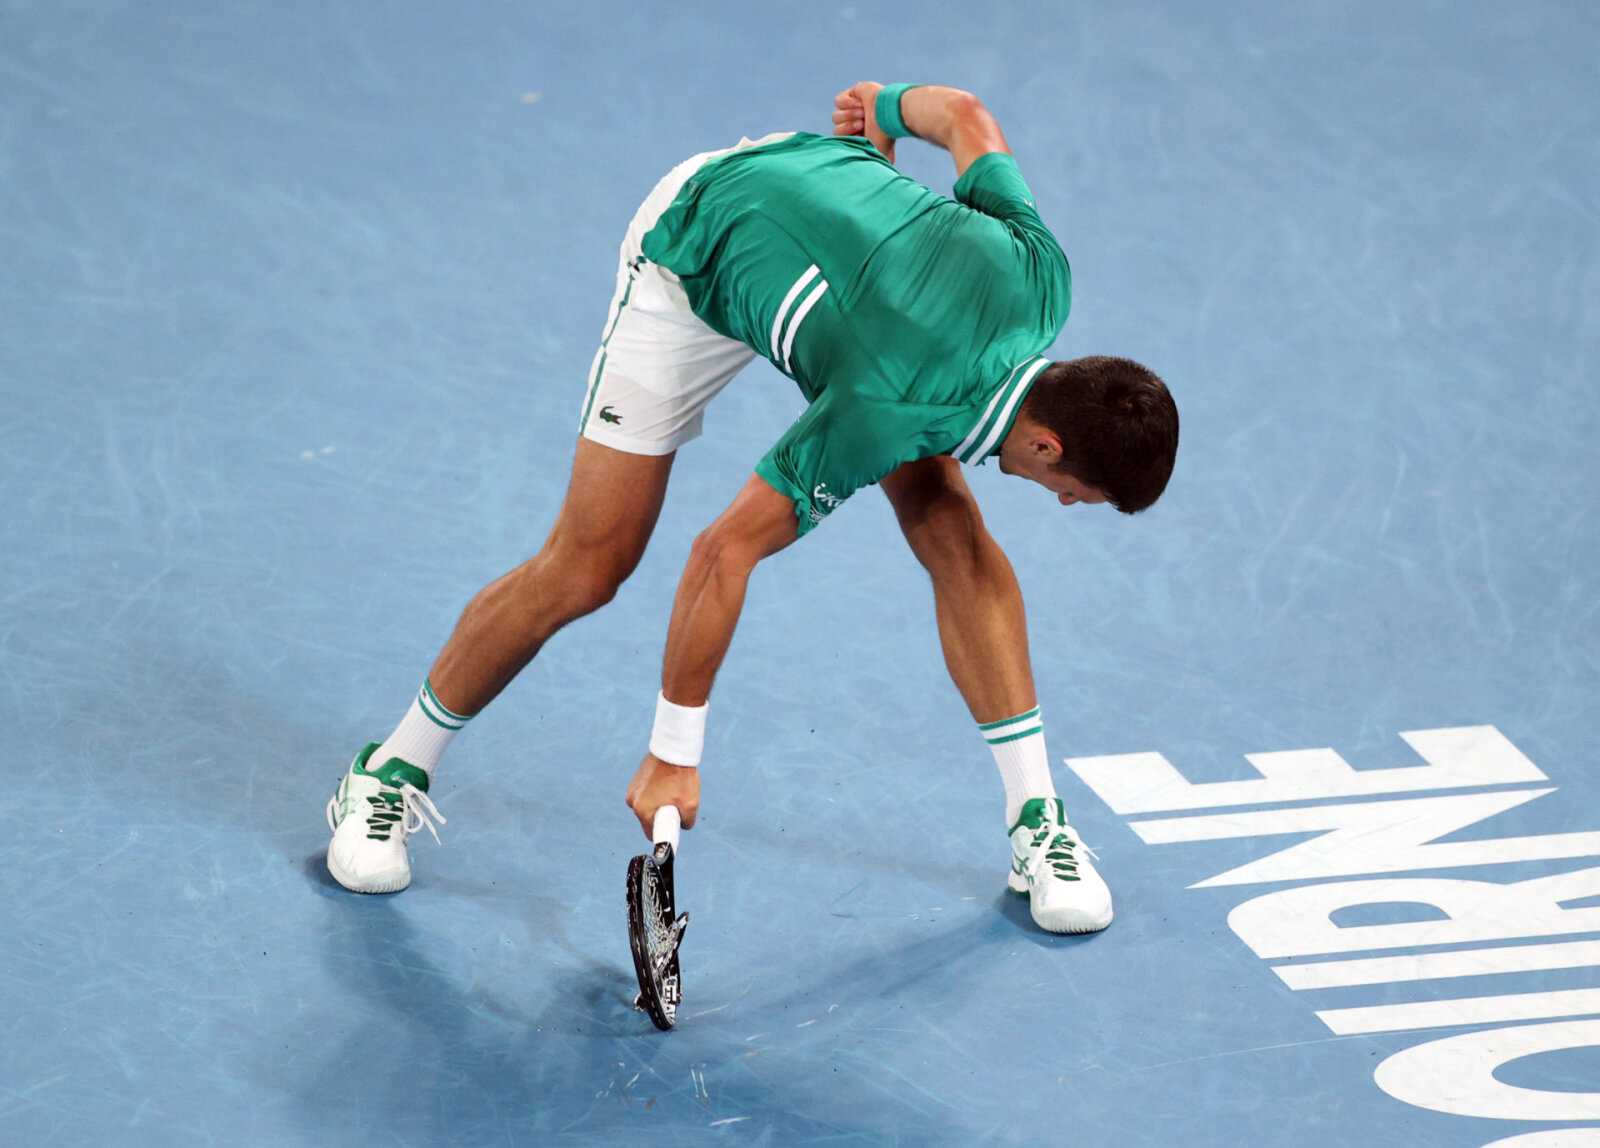 FRUSTRÉ!  Novak Djokovic casse la raquette pendant l'entraînement avec Alexander Zverev aux entraînements des Jeux olympiques de Tokyo 2020